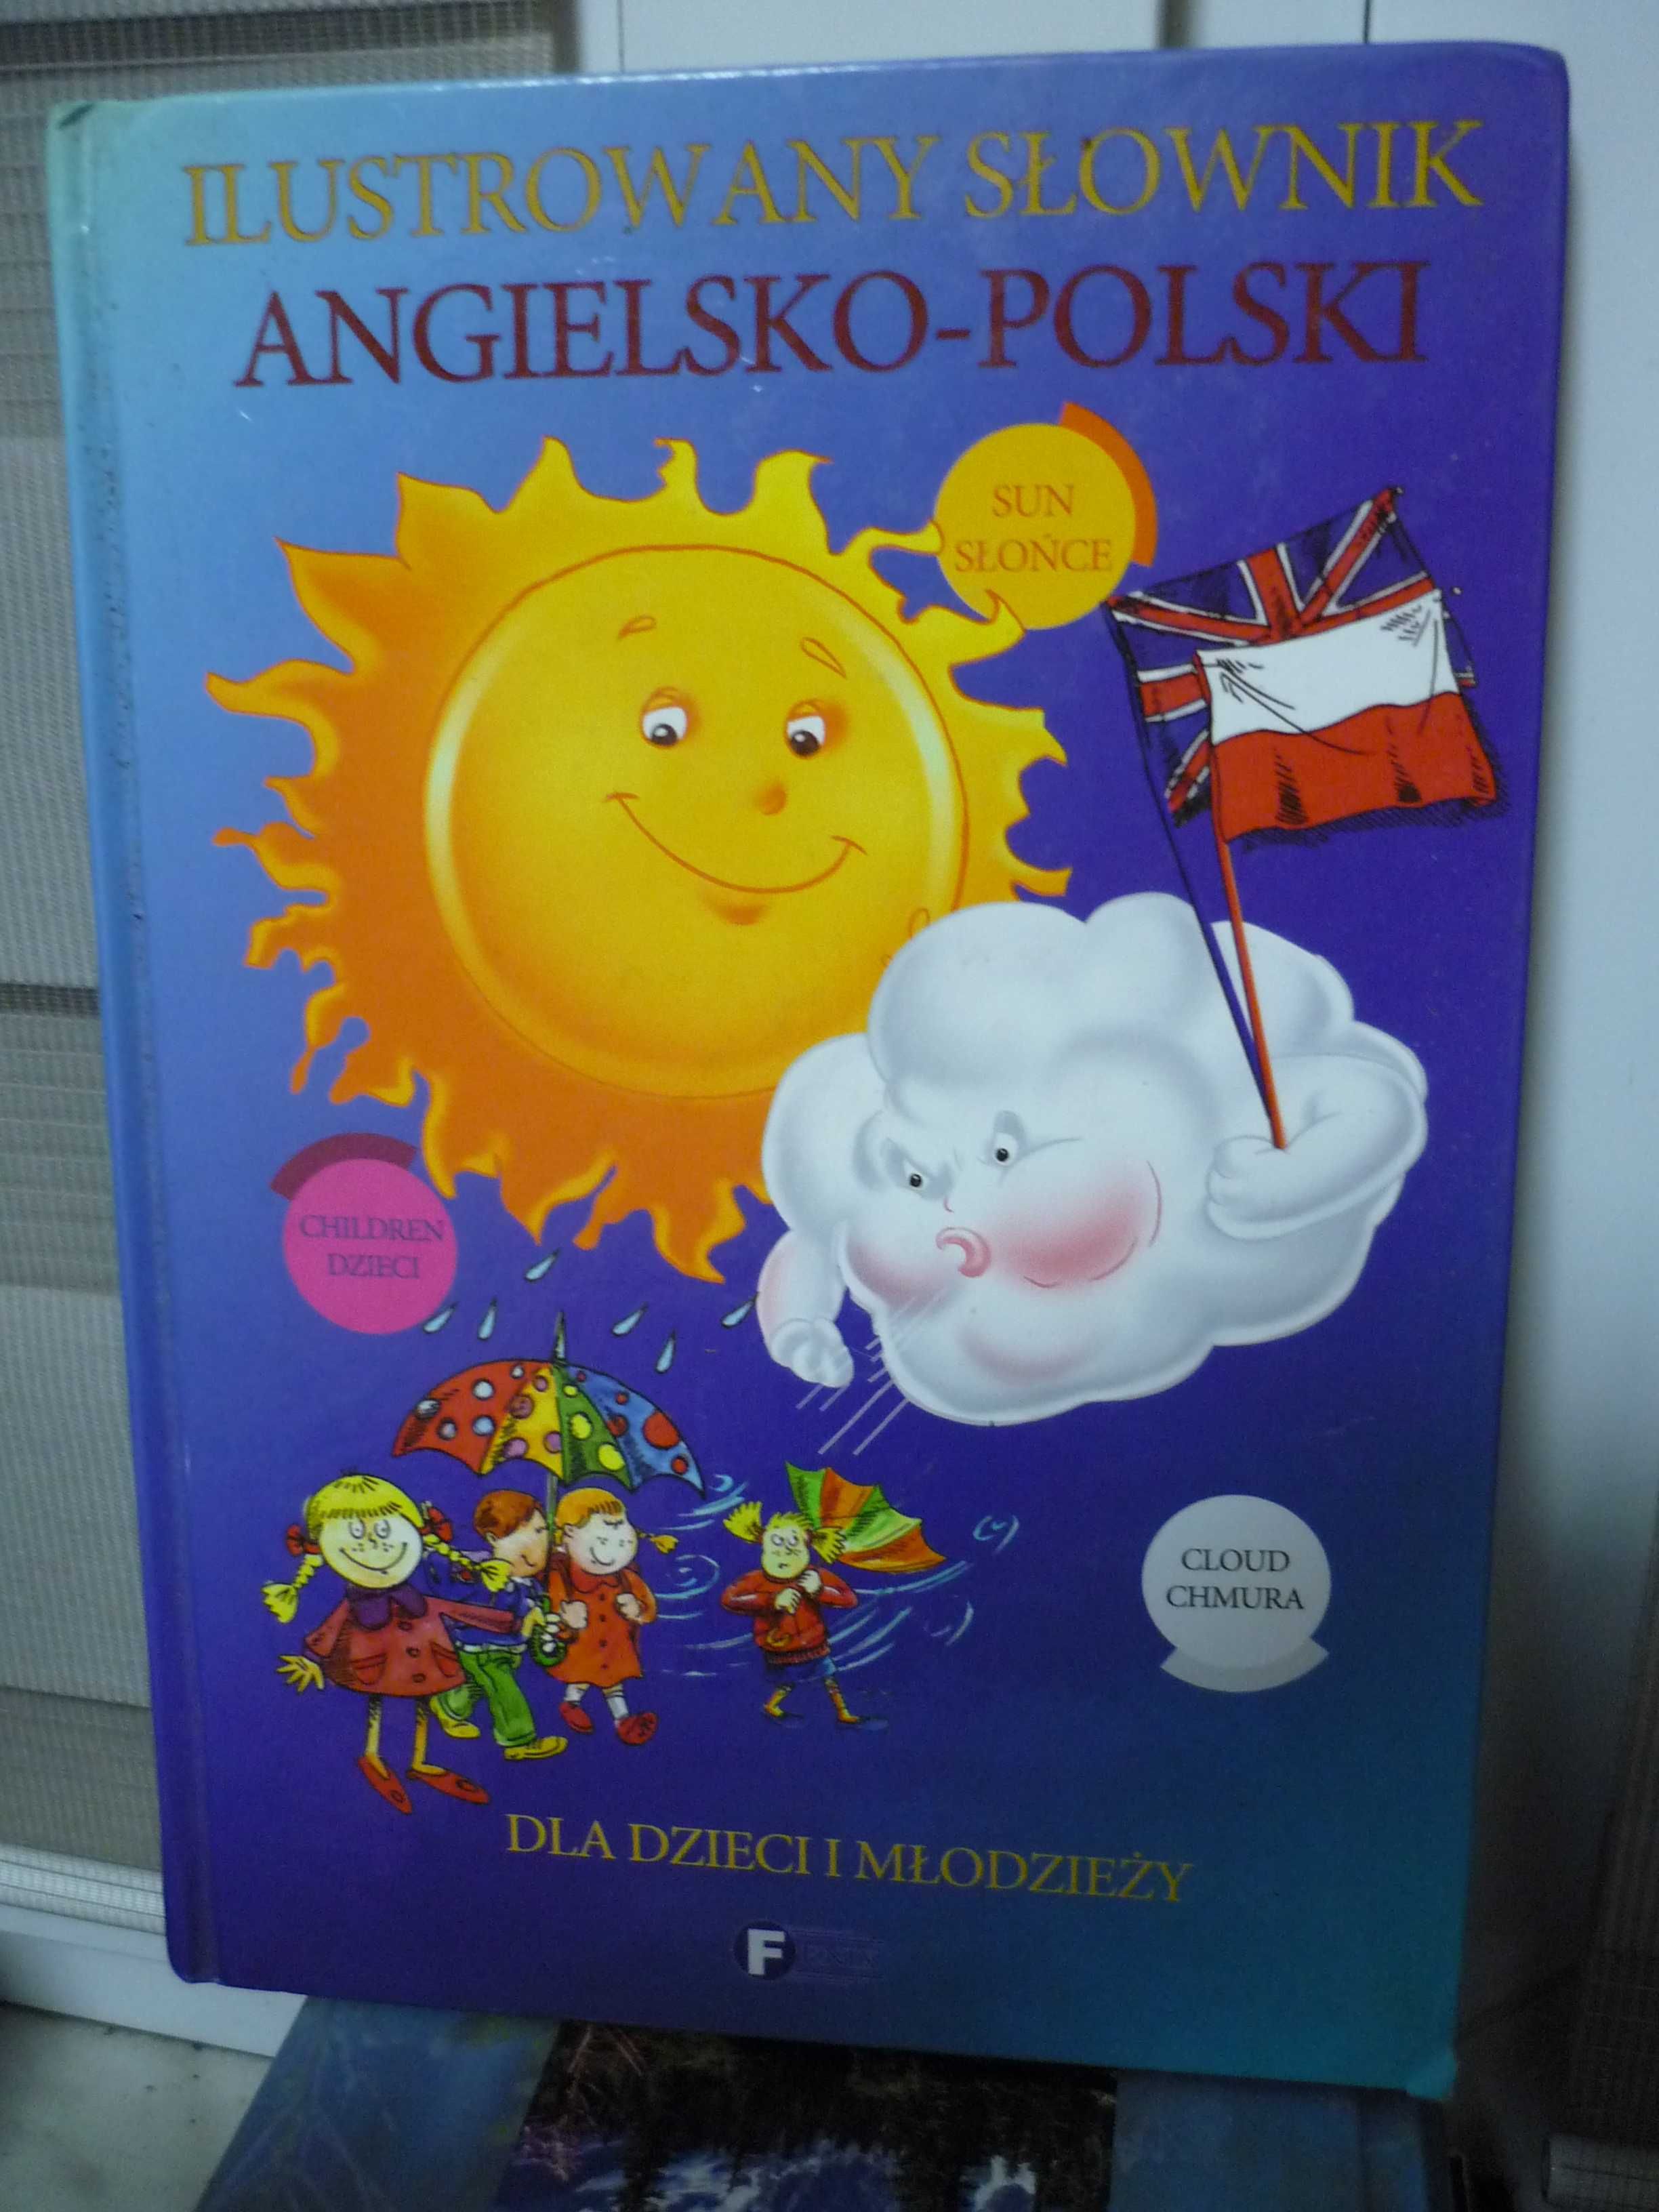 Ilustrowany słownik angielsko-polski dla dzieci i młodzieży.